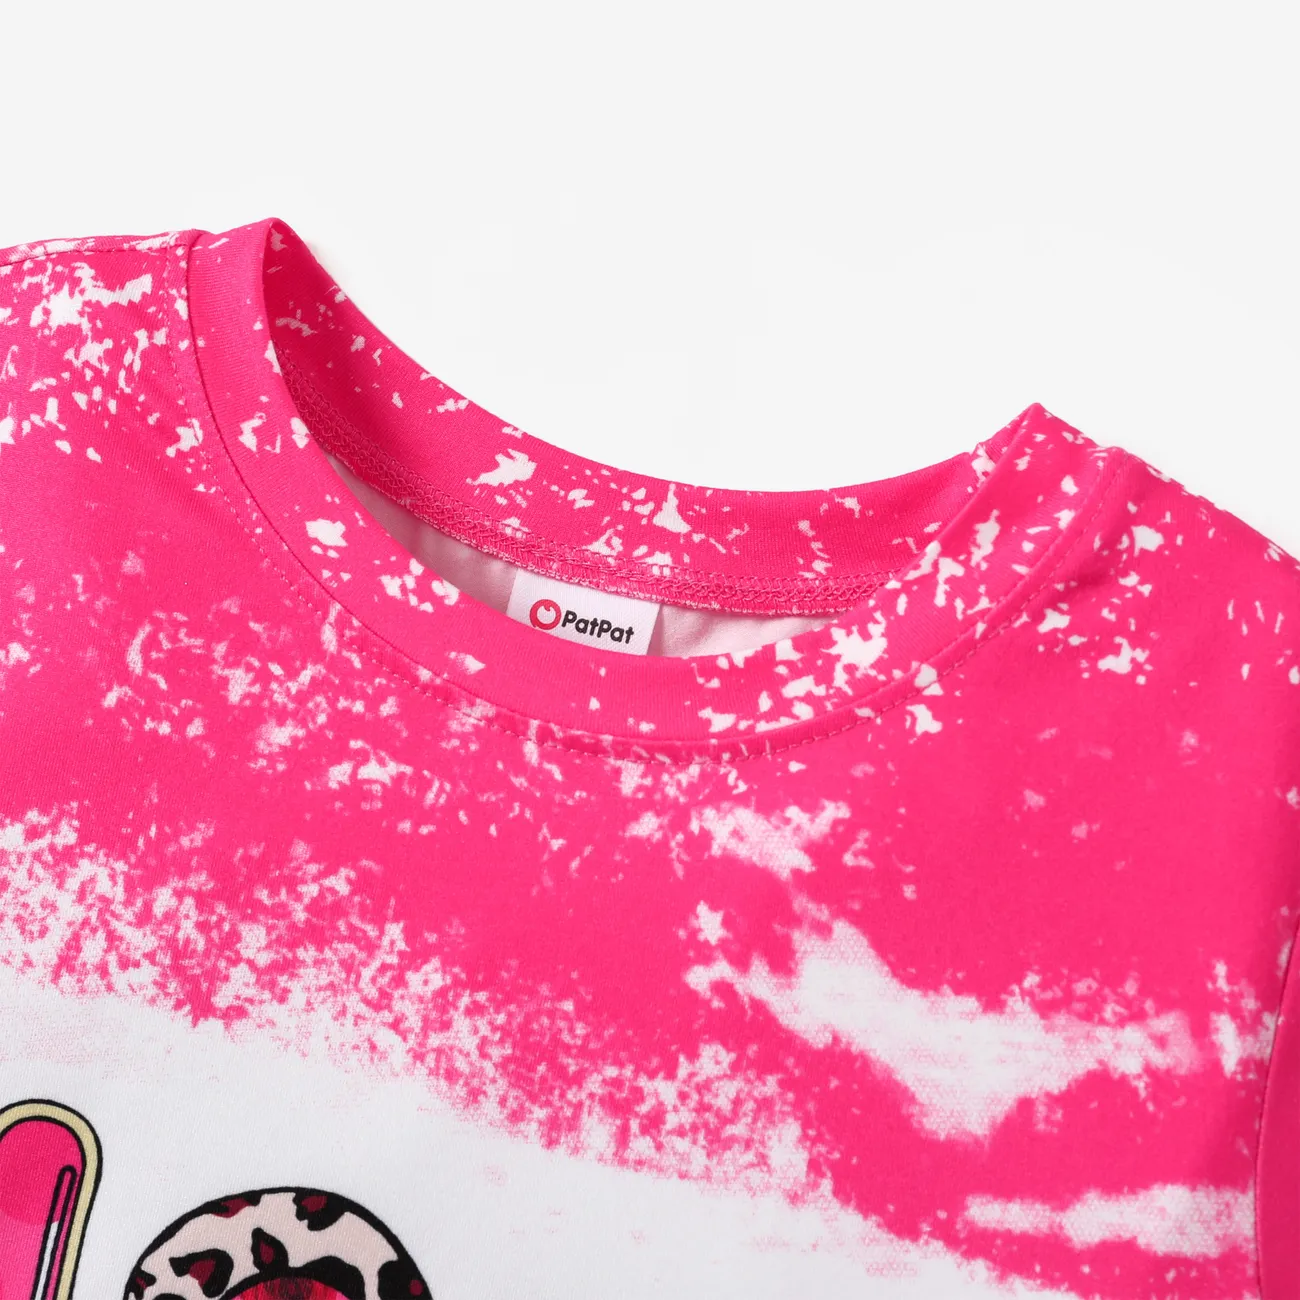 Fête des Mères Enfants Fille Lettre Manches courtes T-Shirt Rose Vif big image 1